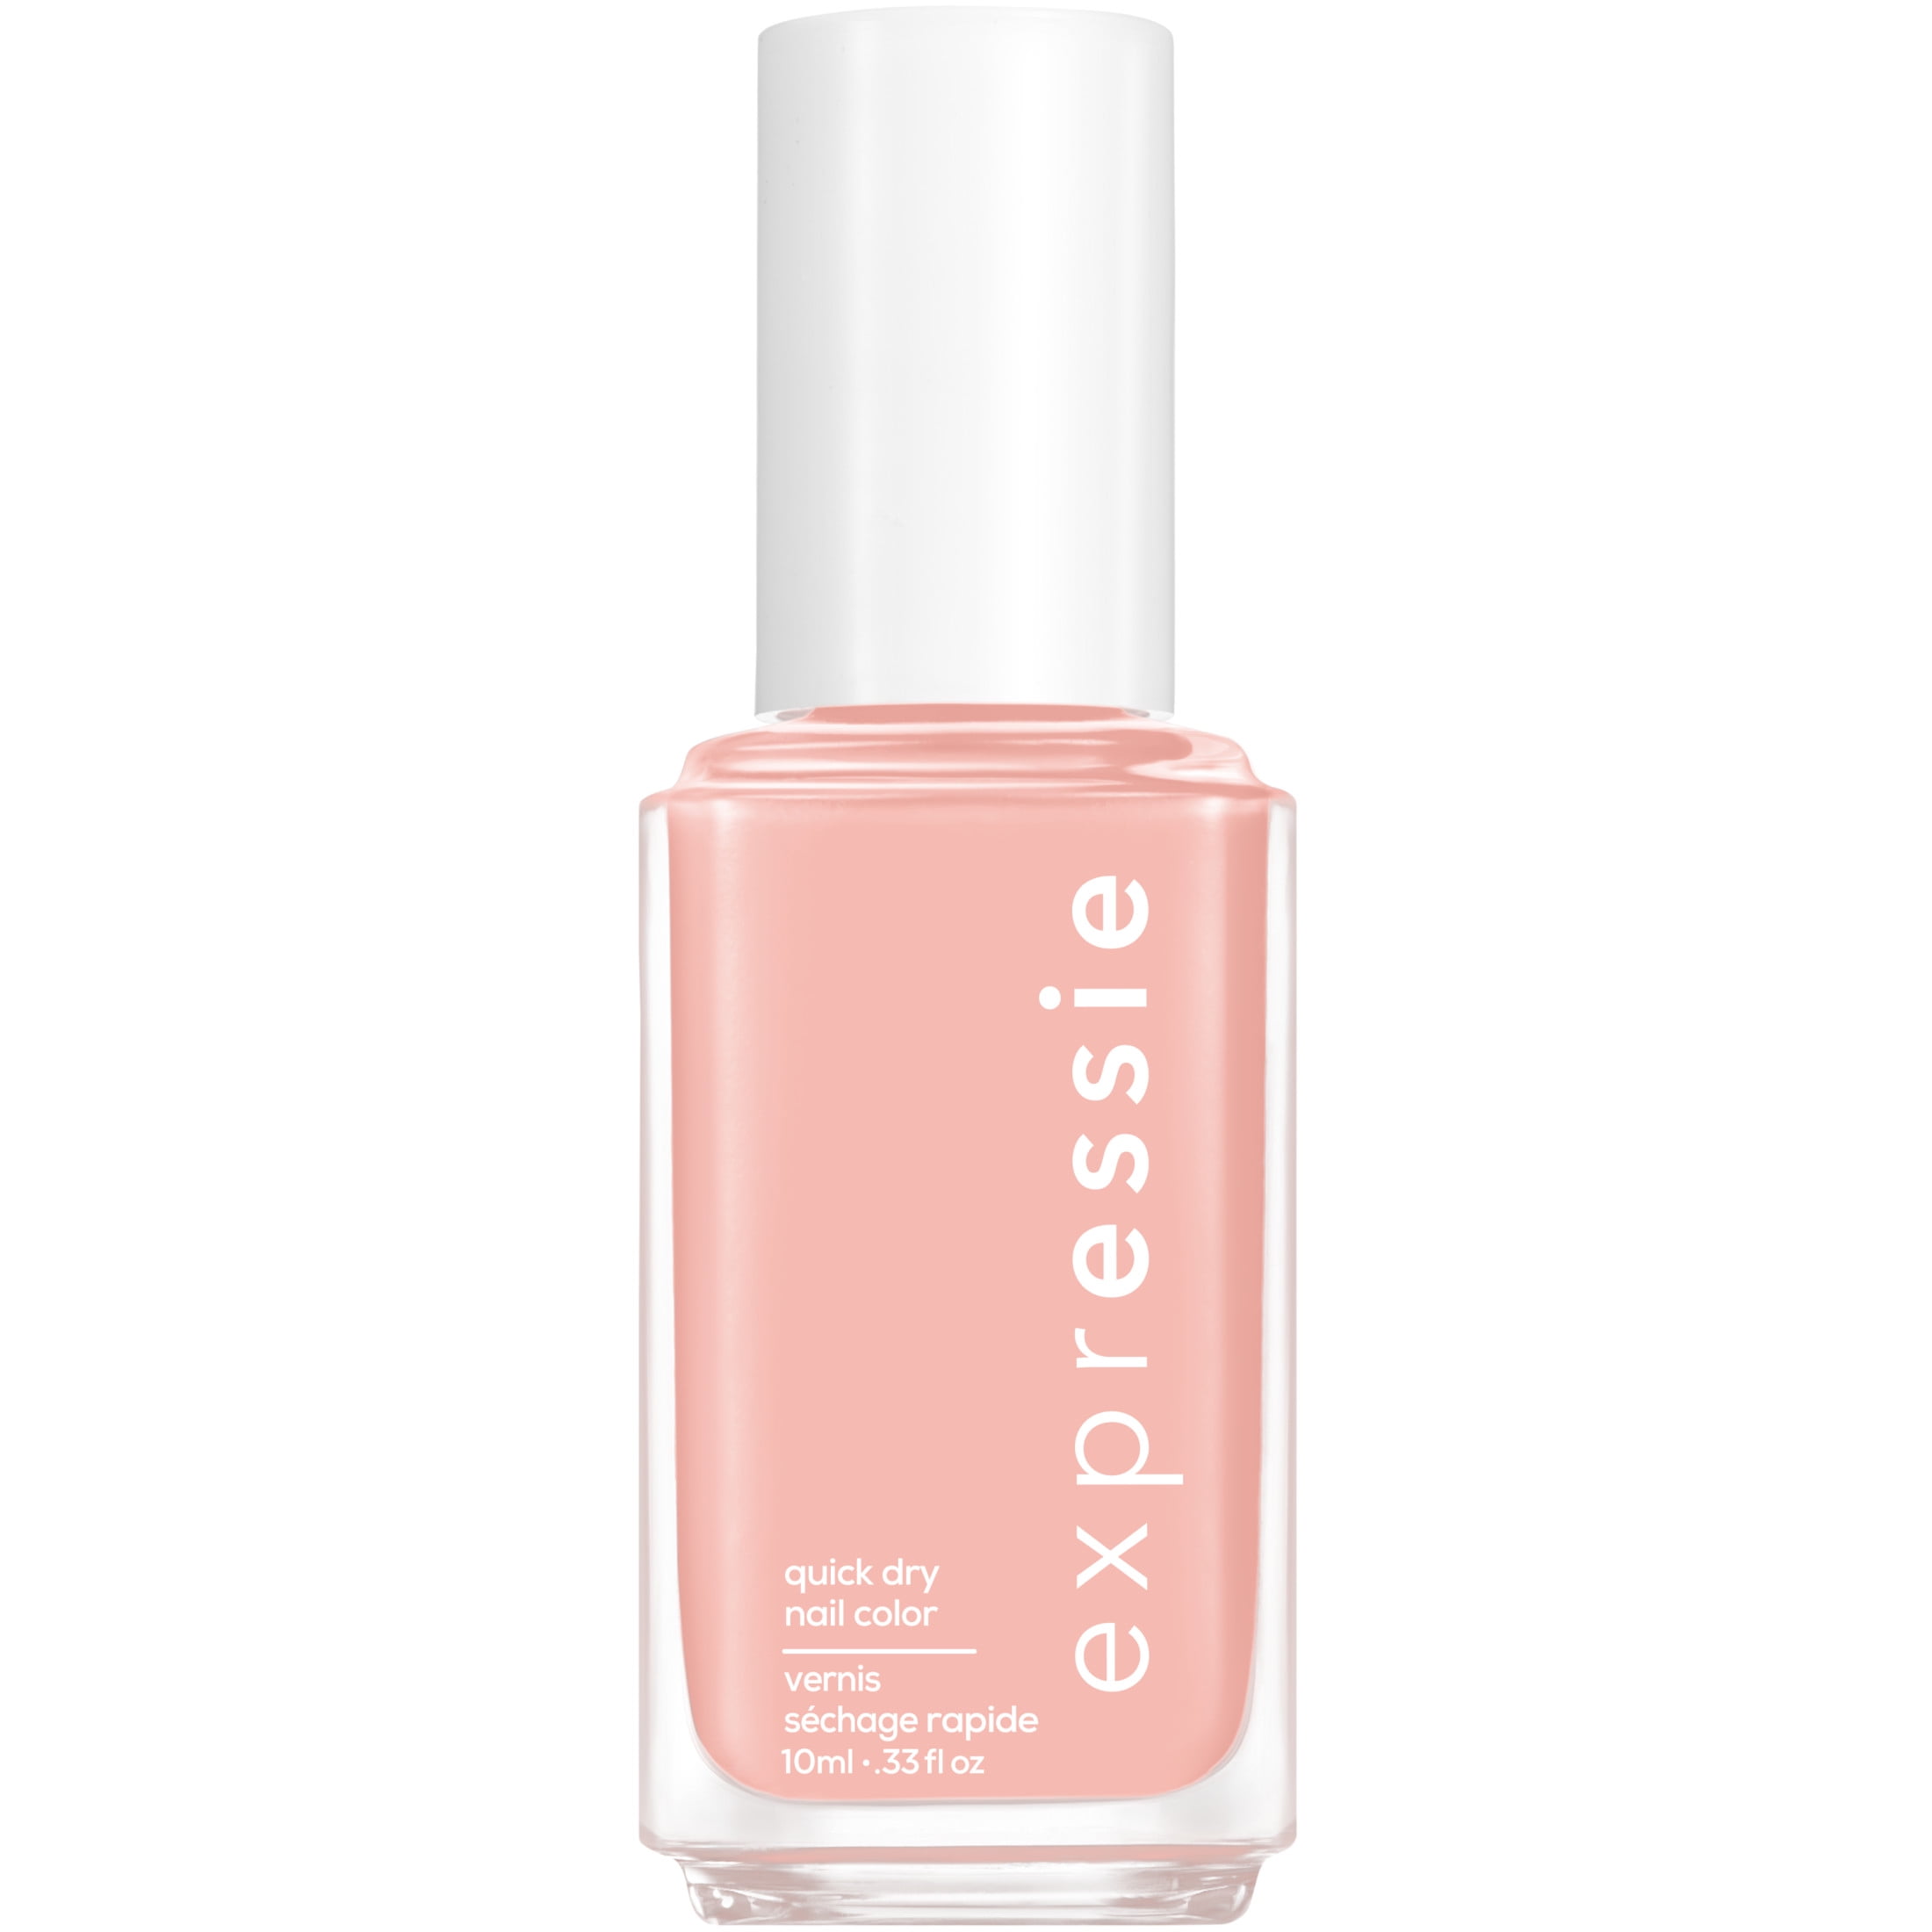 essie Expressie Quick Dry Vegan Nail Polish, Soft Pink Beige, 0.33 fl oz  Bottle